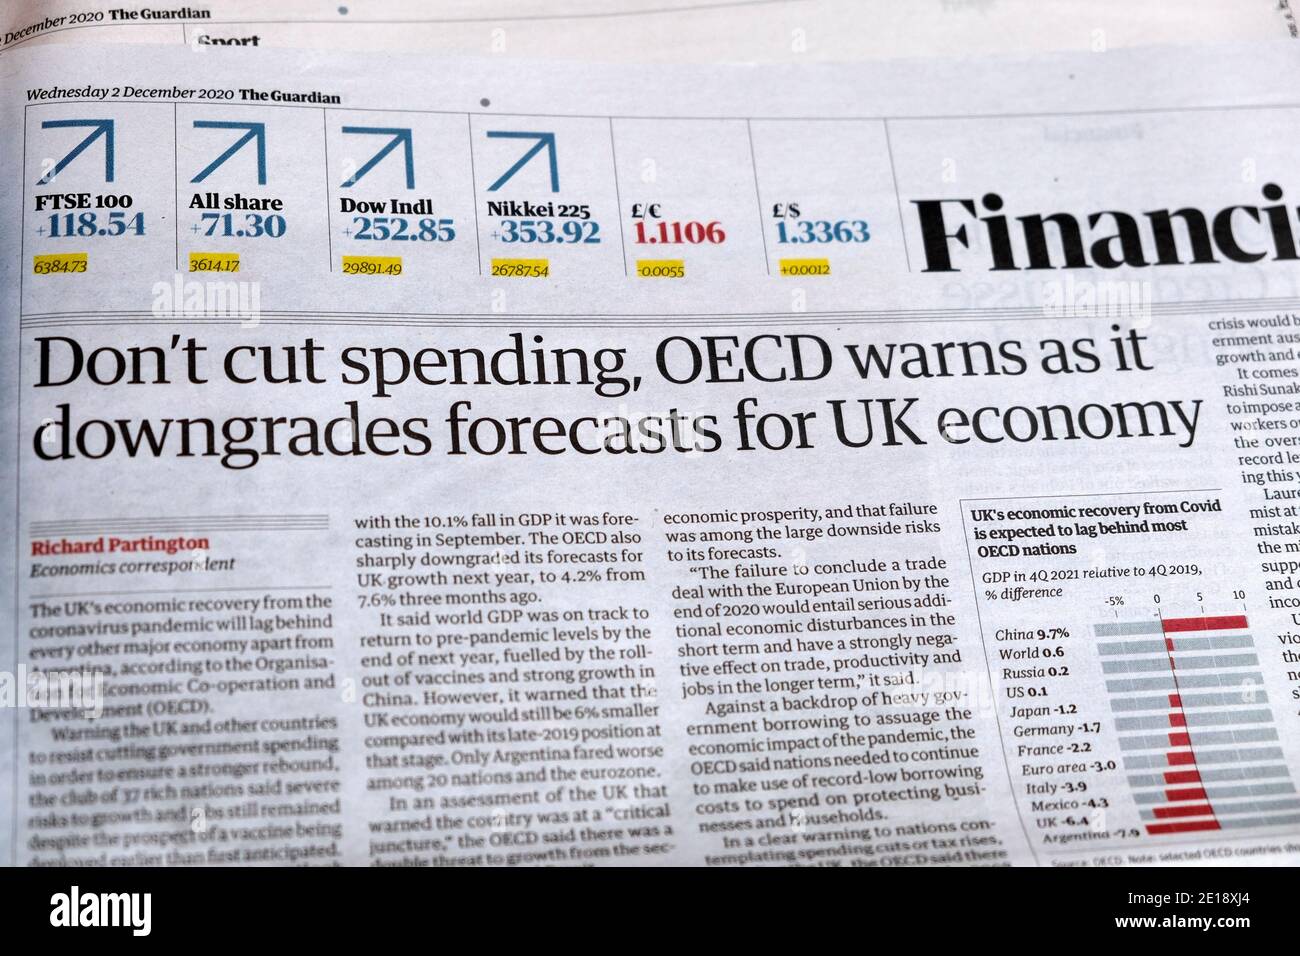 "Die Ausgaben nicht kürzen die OECD warnt, da sie die Prognosen für herabstuft Britische Wirtschaftszeitung Guardian Financial Headline am 2. Dezember 2020 London, England, Großbritannien Stockfoto